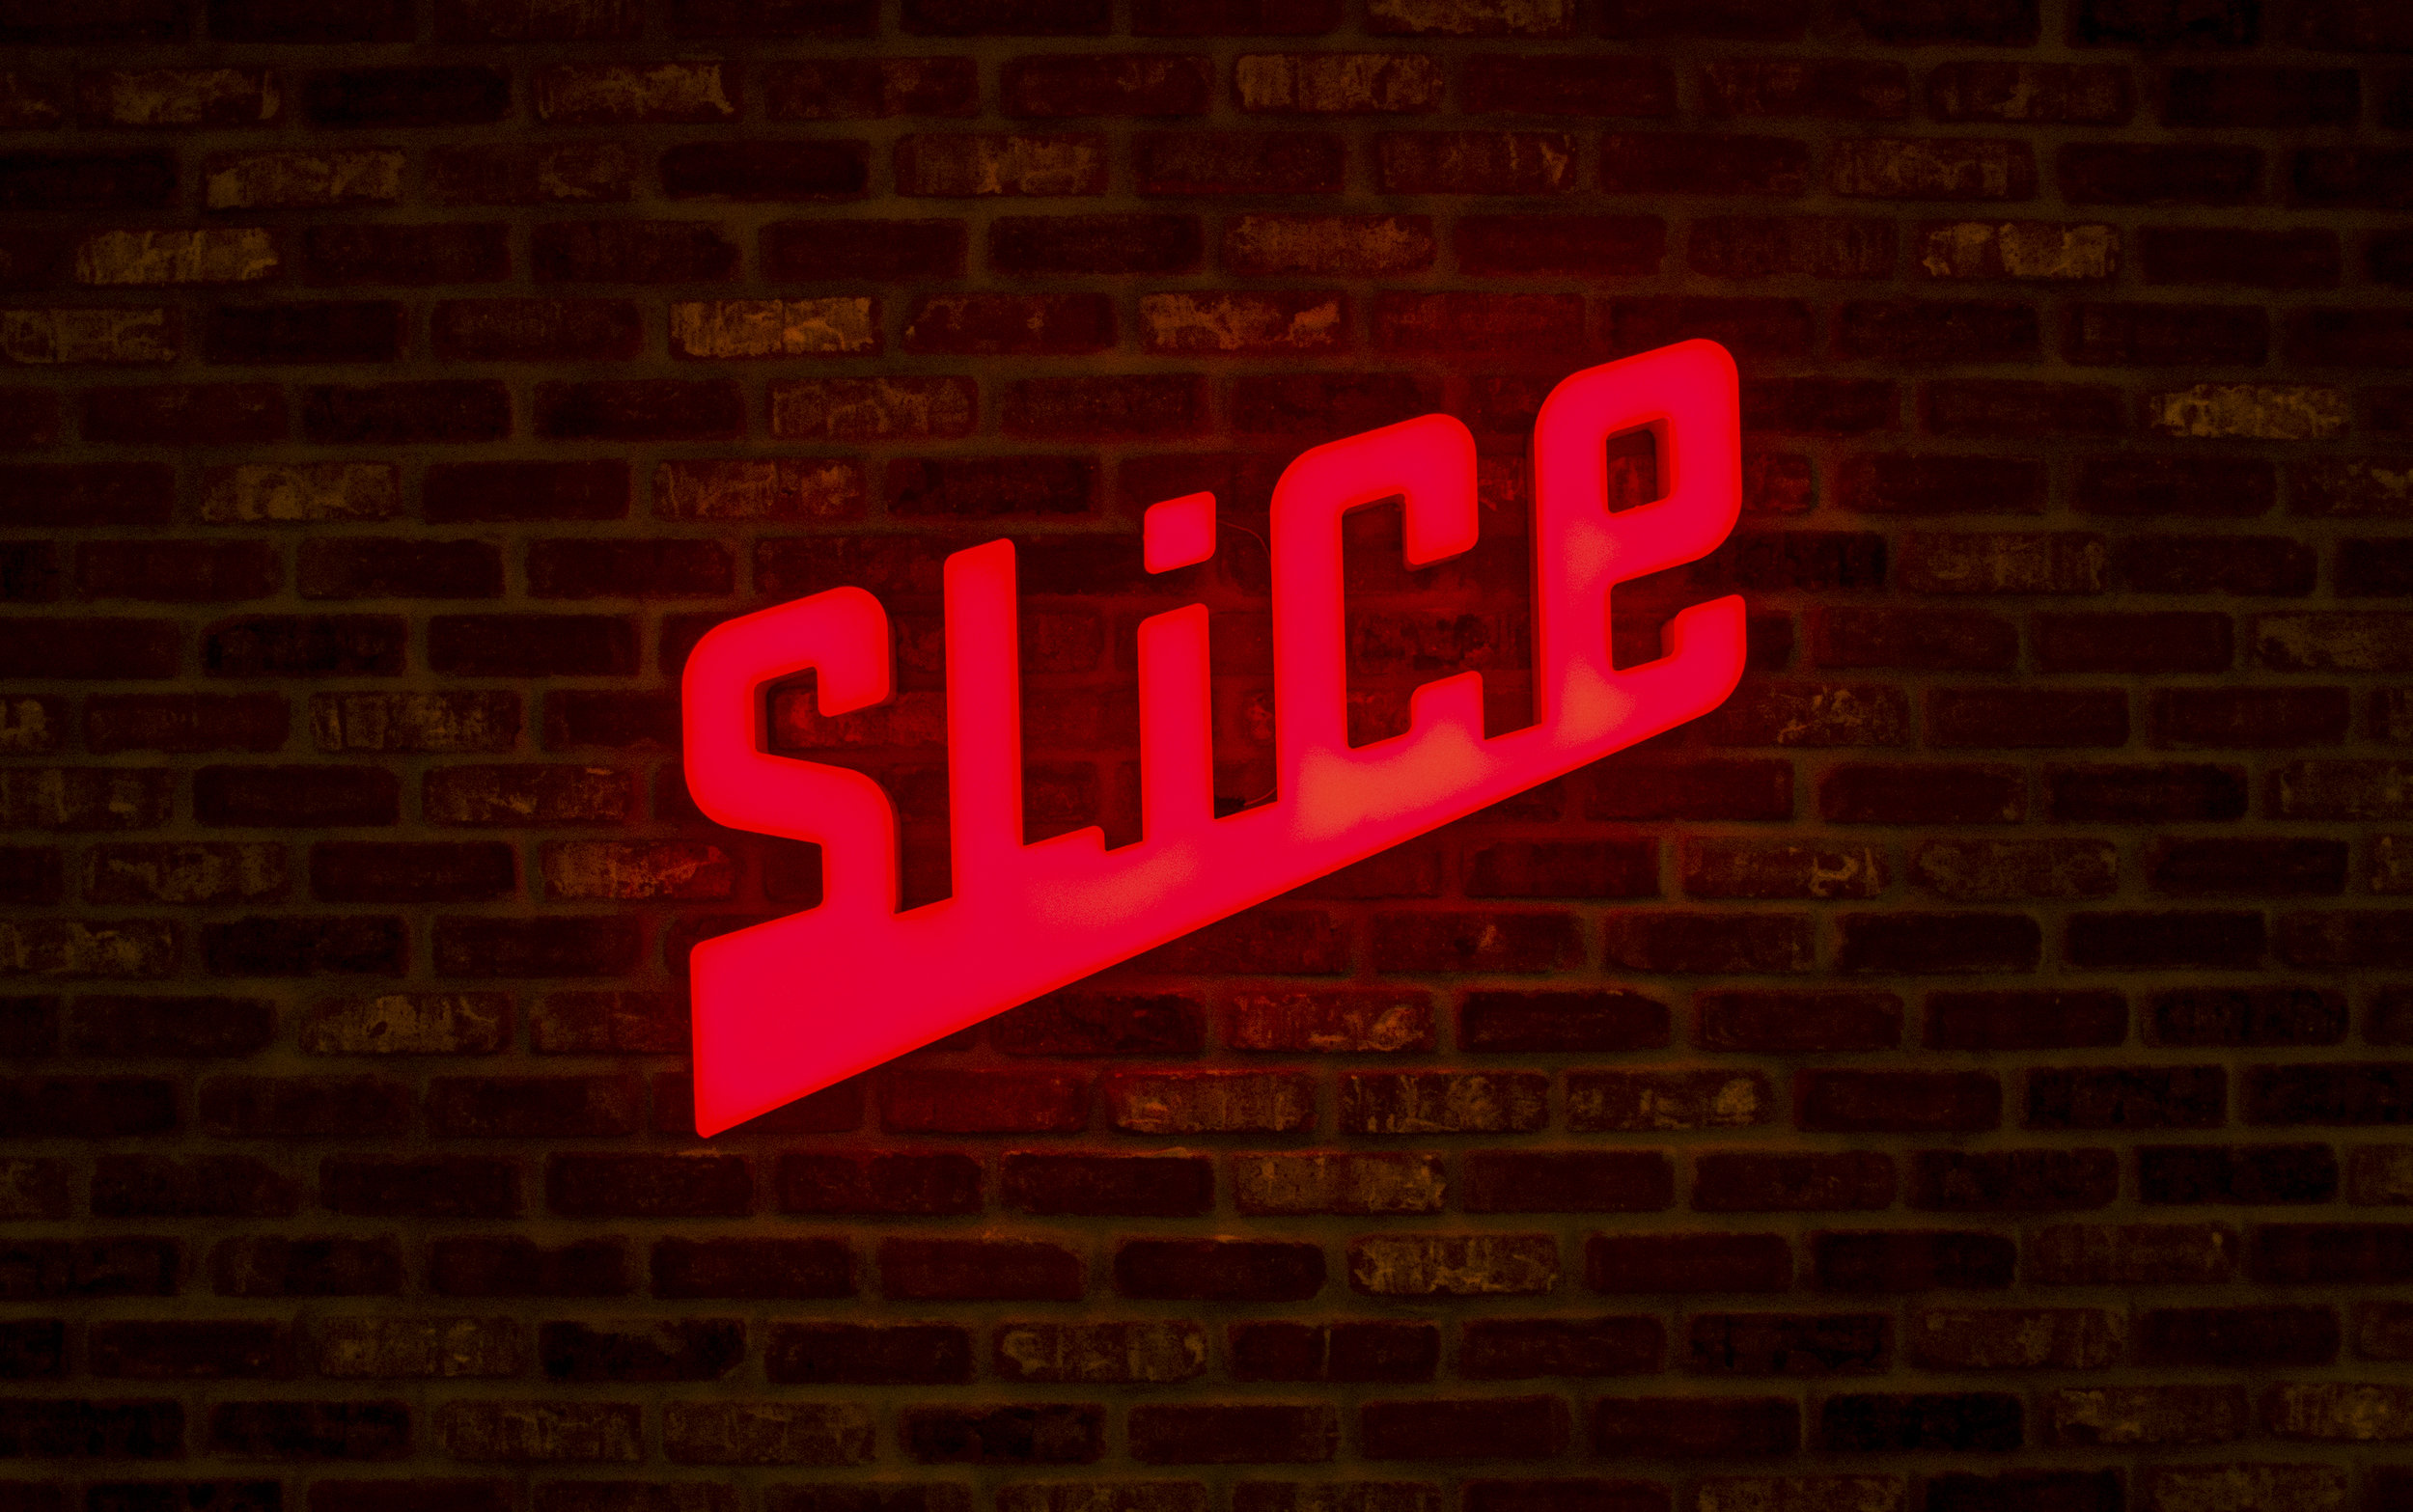 Slice Pizza App - Name &amp; Primary Identity